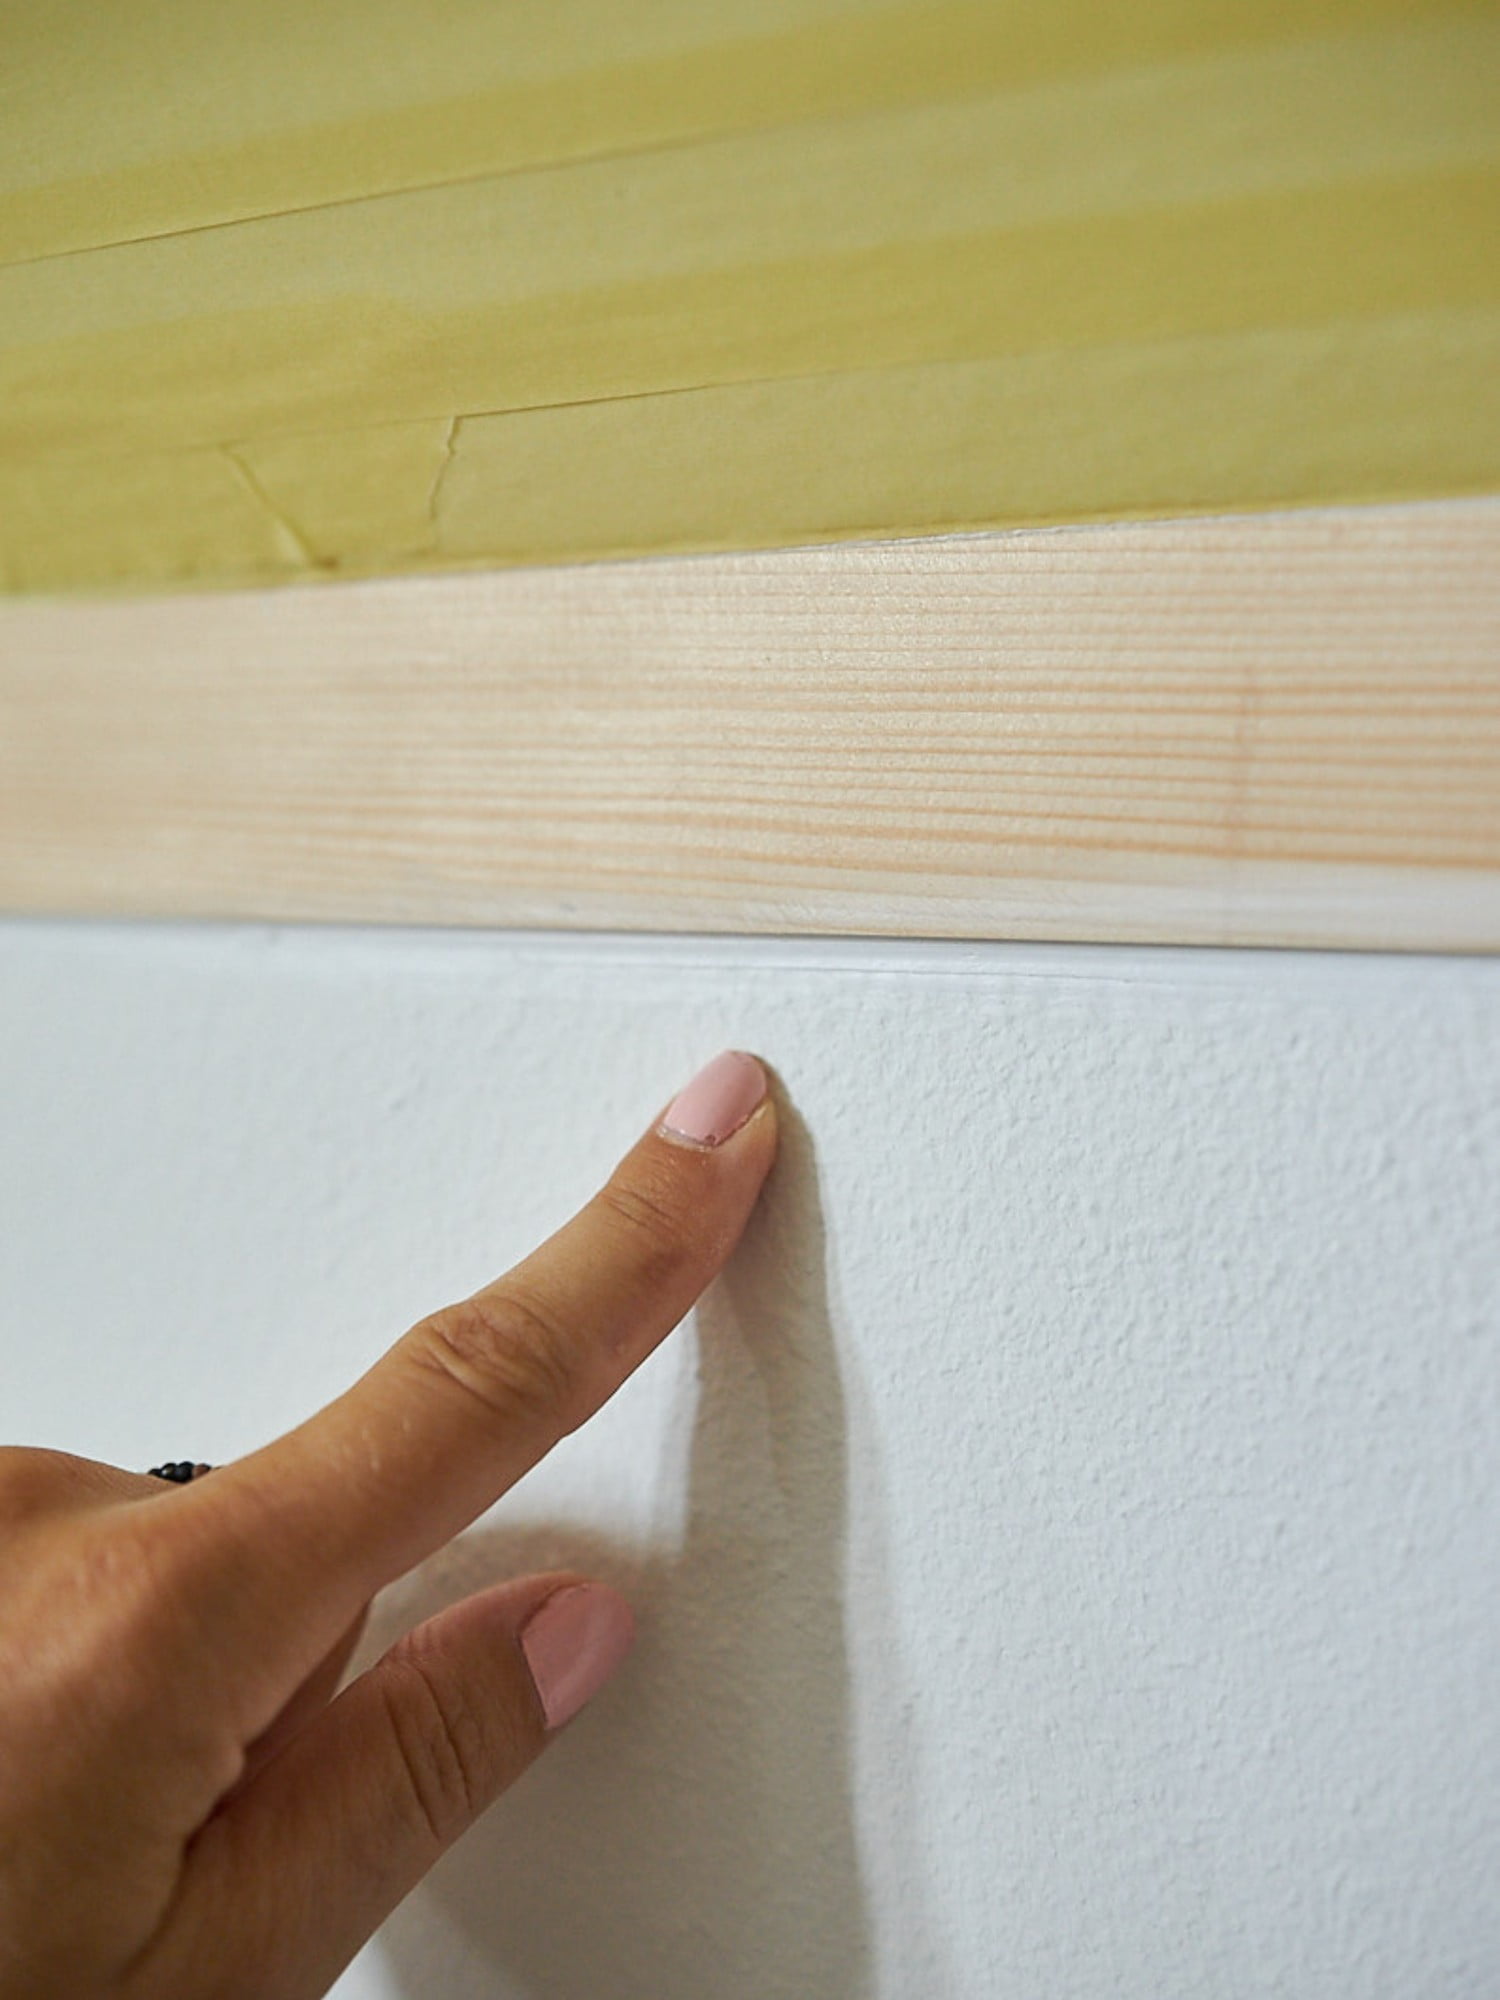 De asemenea, umple și nivelează denivelările dintre perete și panouri folosind chit. <br><br>